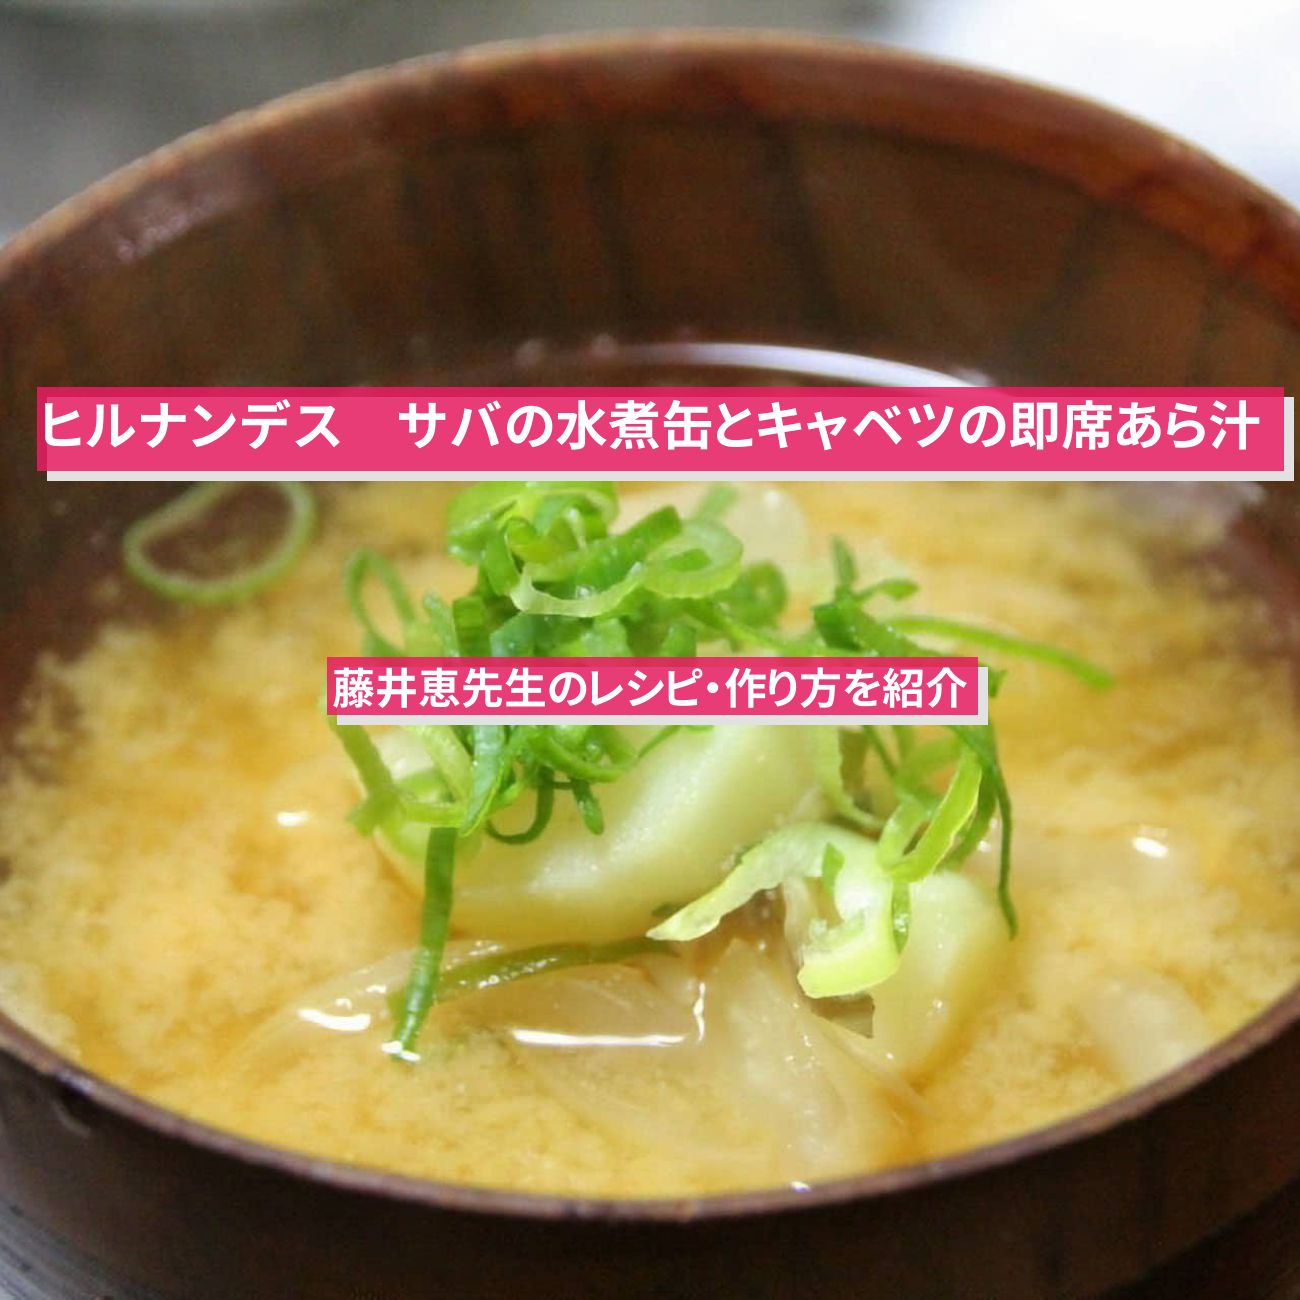 【ヒルナンデス】『サバの水煮缶とキャベツの即席あら汁』藤井恵先生のレシピ・作り方を紹介